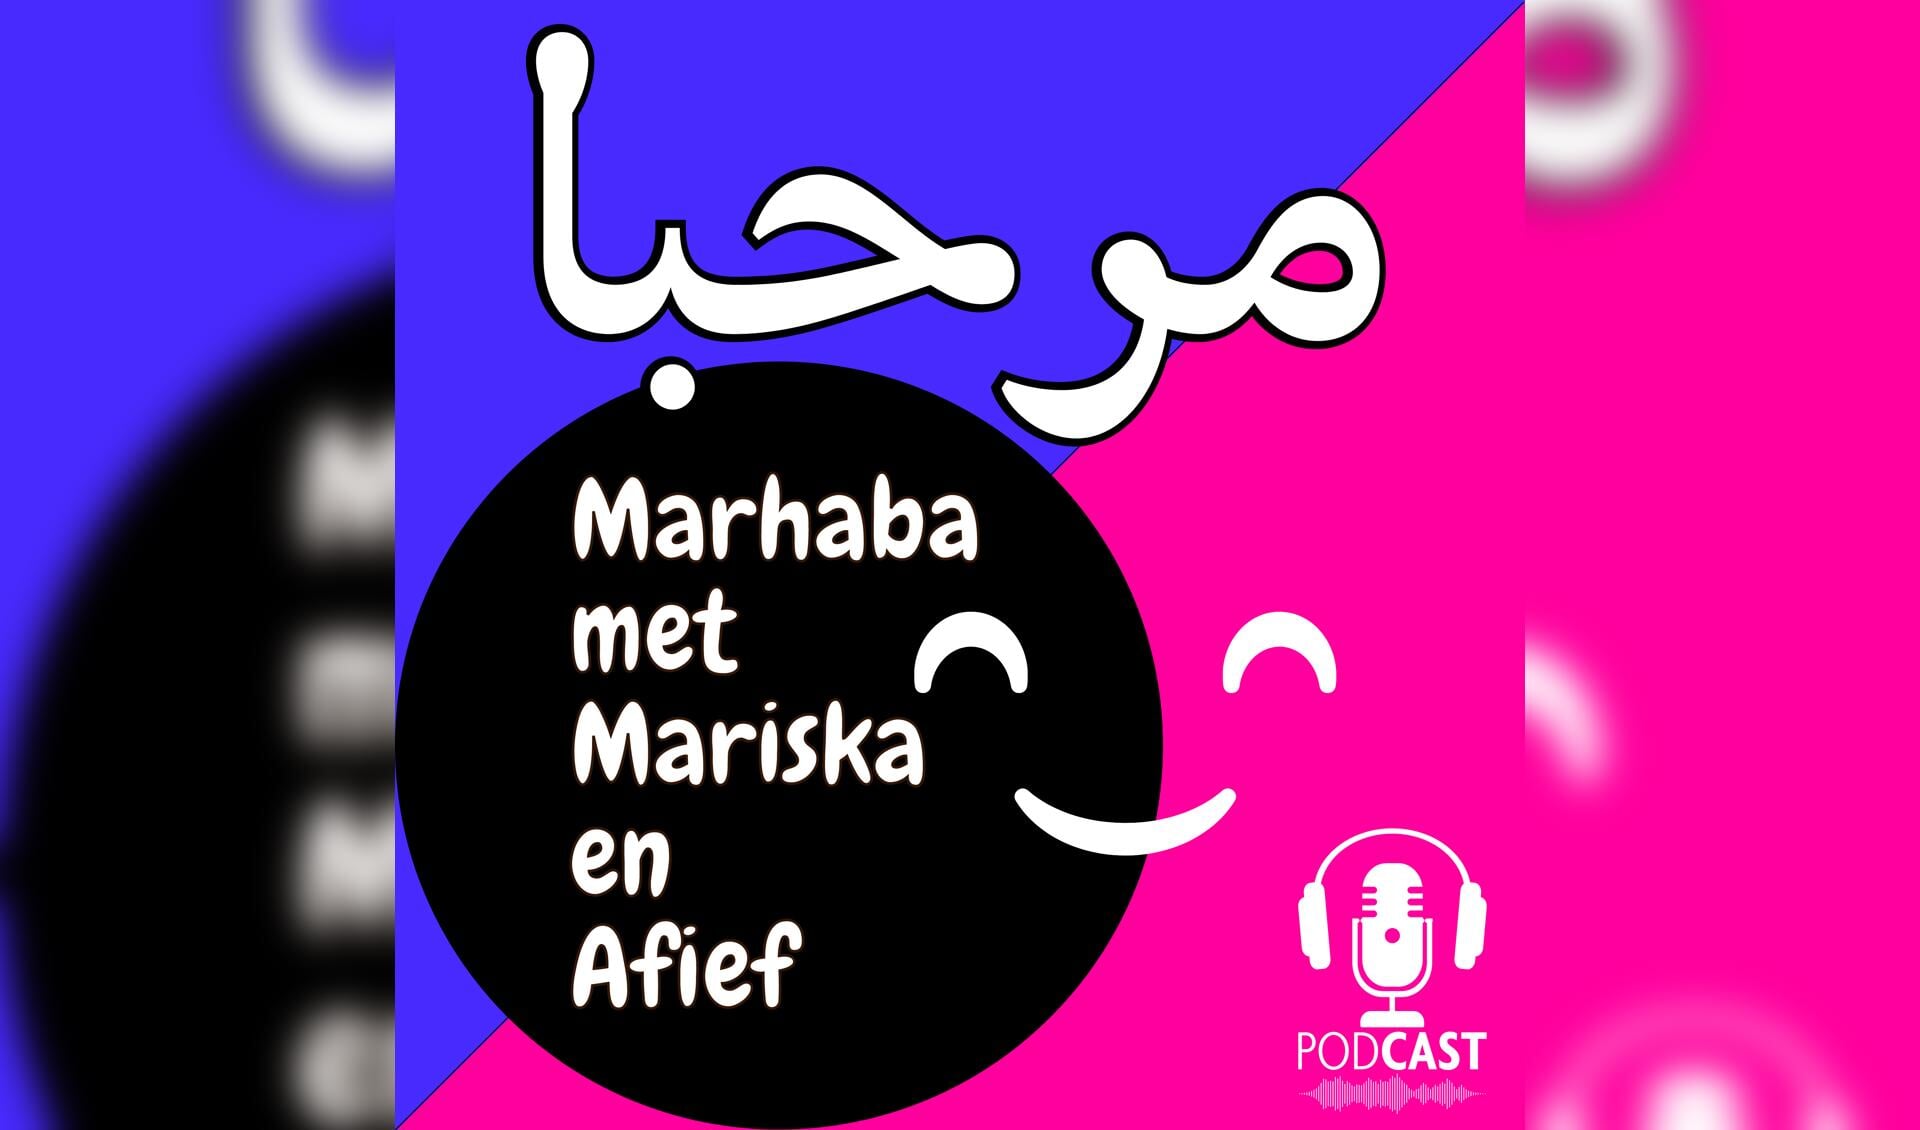 'Hallo' in Arabische letters en 'Marhaba met Mariska en Afief. Podcast'.